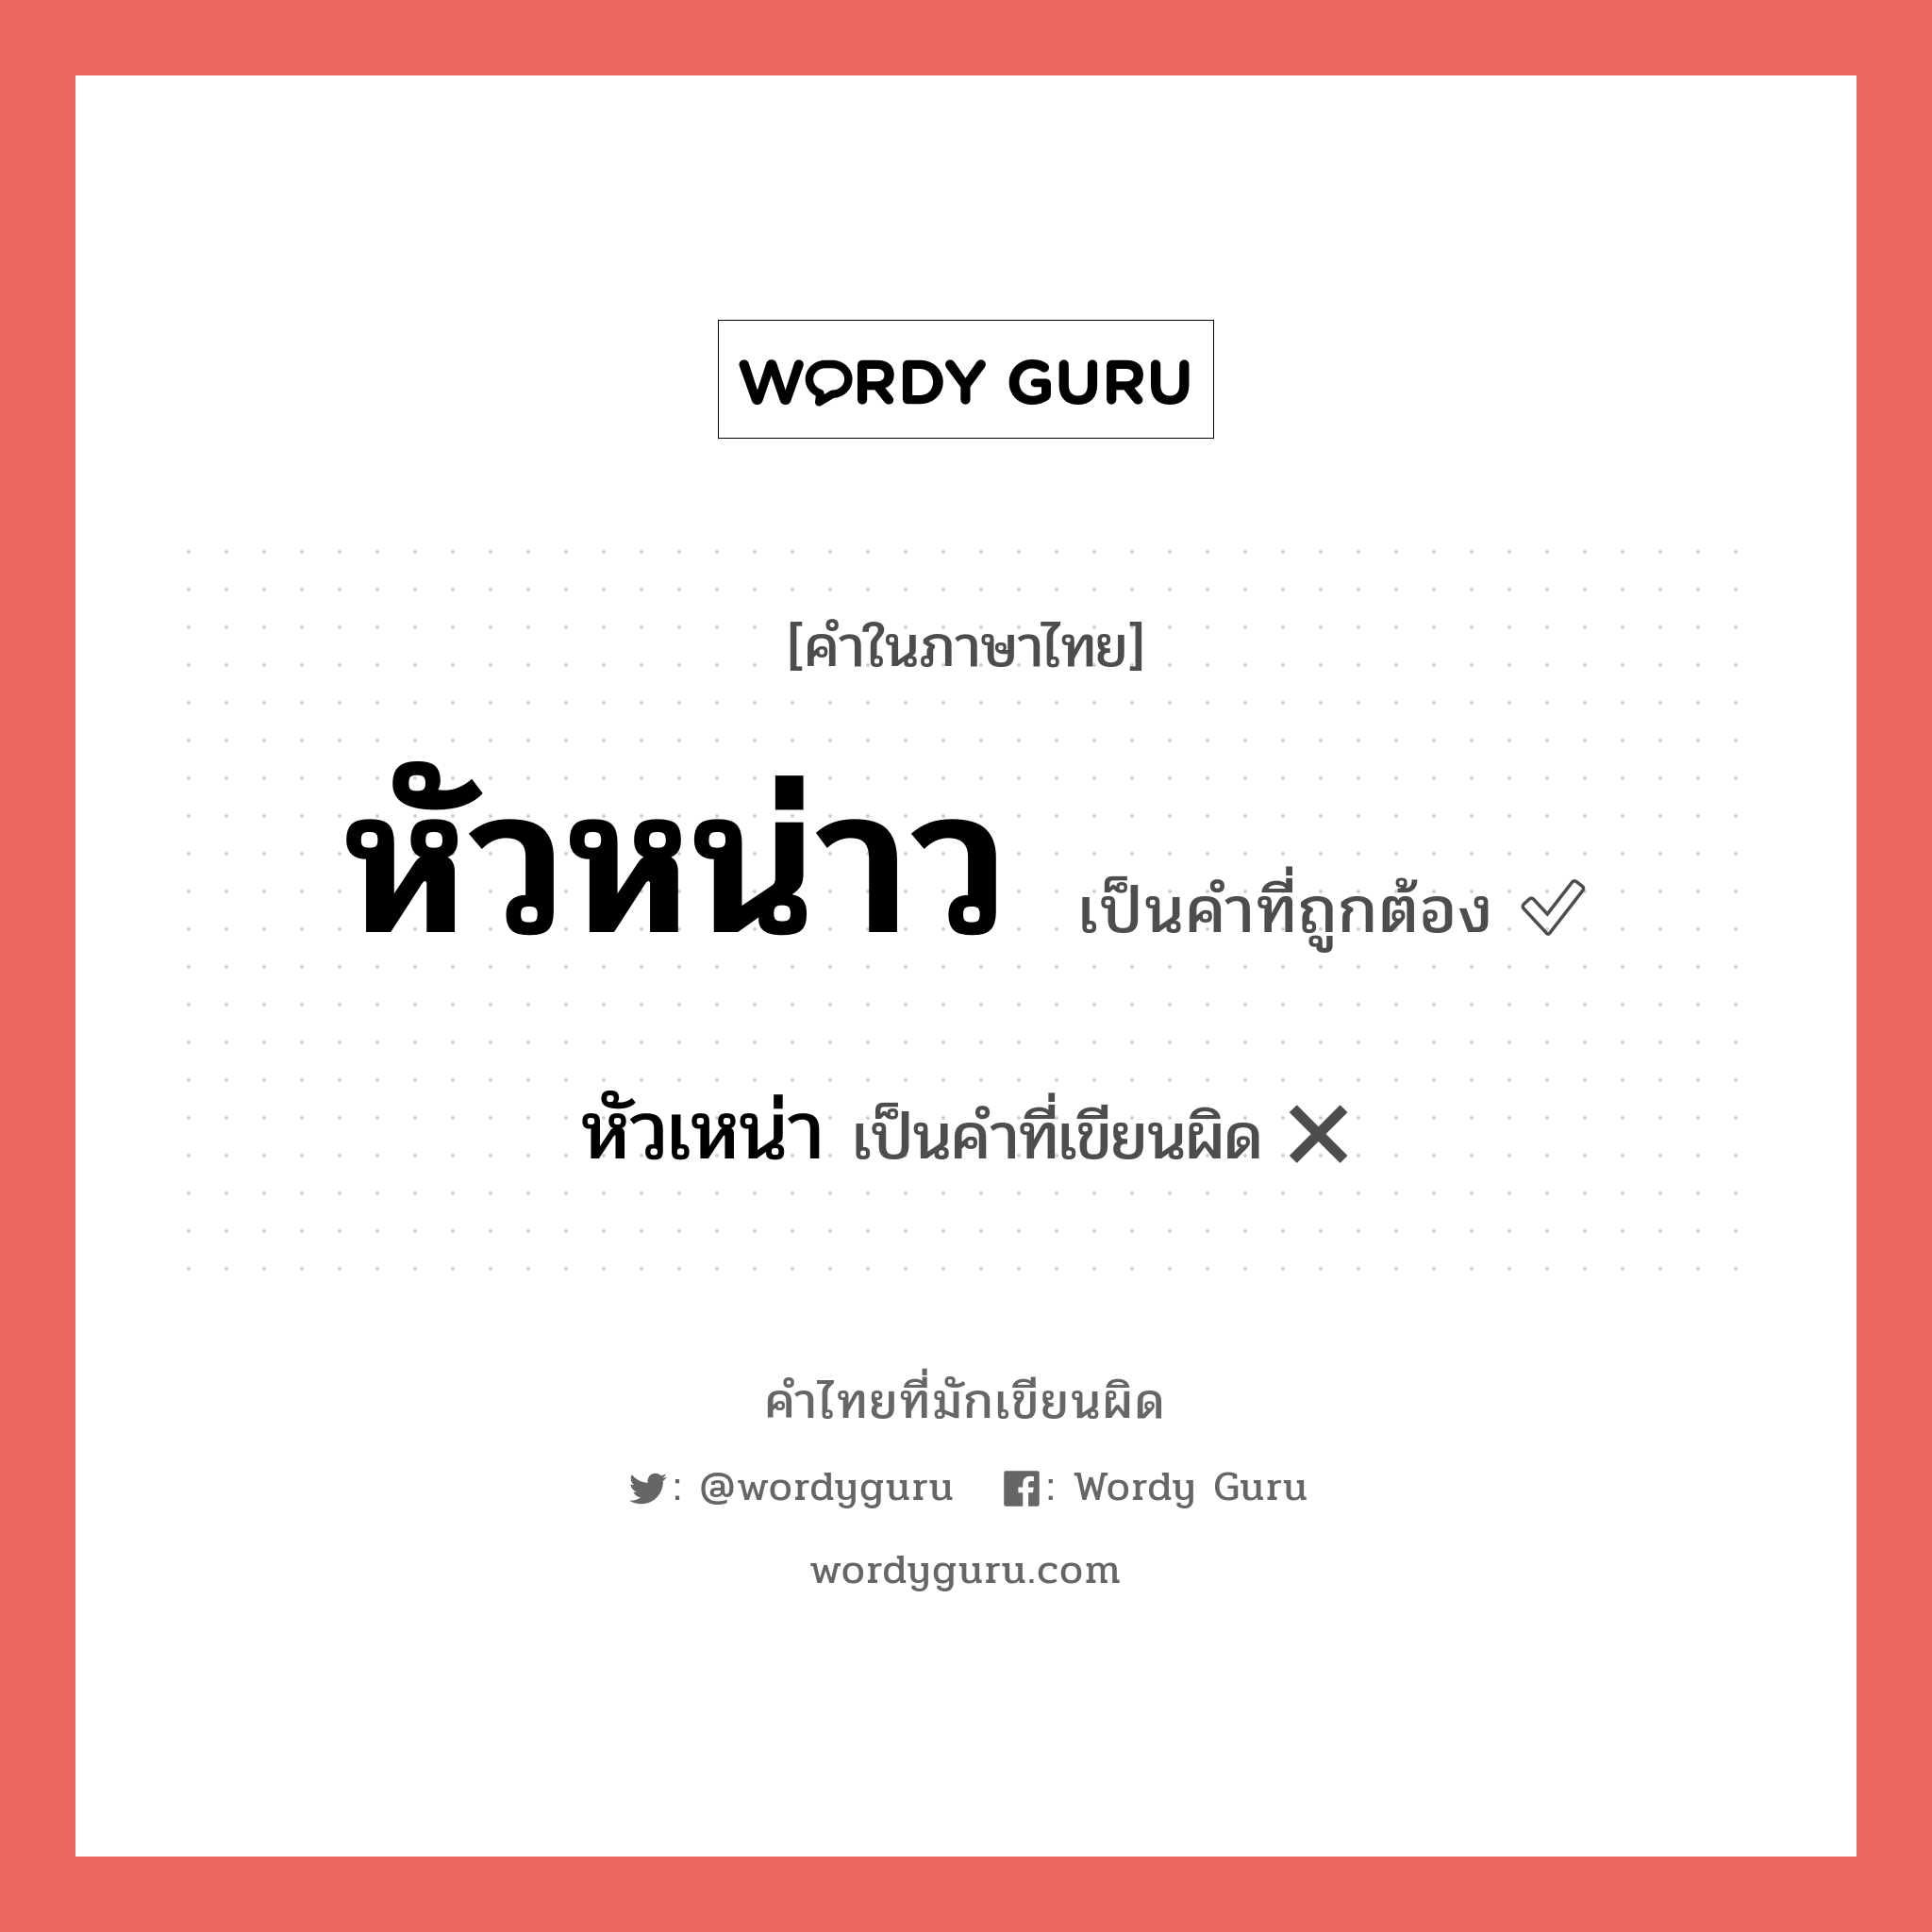 หัวหน่าว หรือ หัวเหน่า เขียนยังไง? คำไหนเขียนถูก?, คำในภาษาไทยที่มักเขียนผิด หัวหน่าว คำที่ผิด ❌ หัวเหน่า